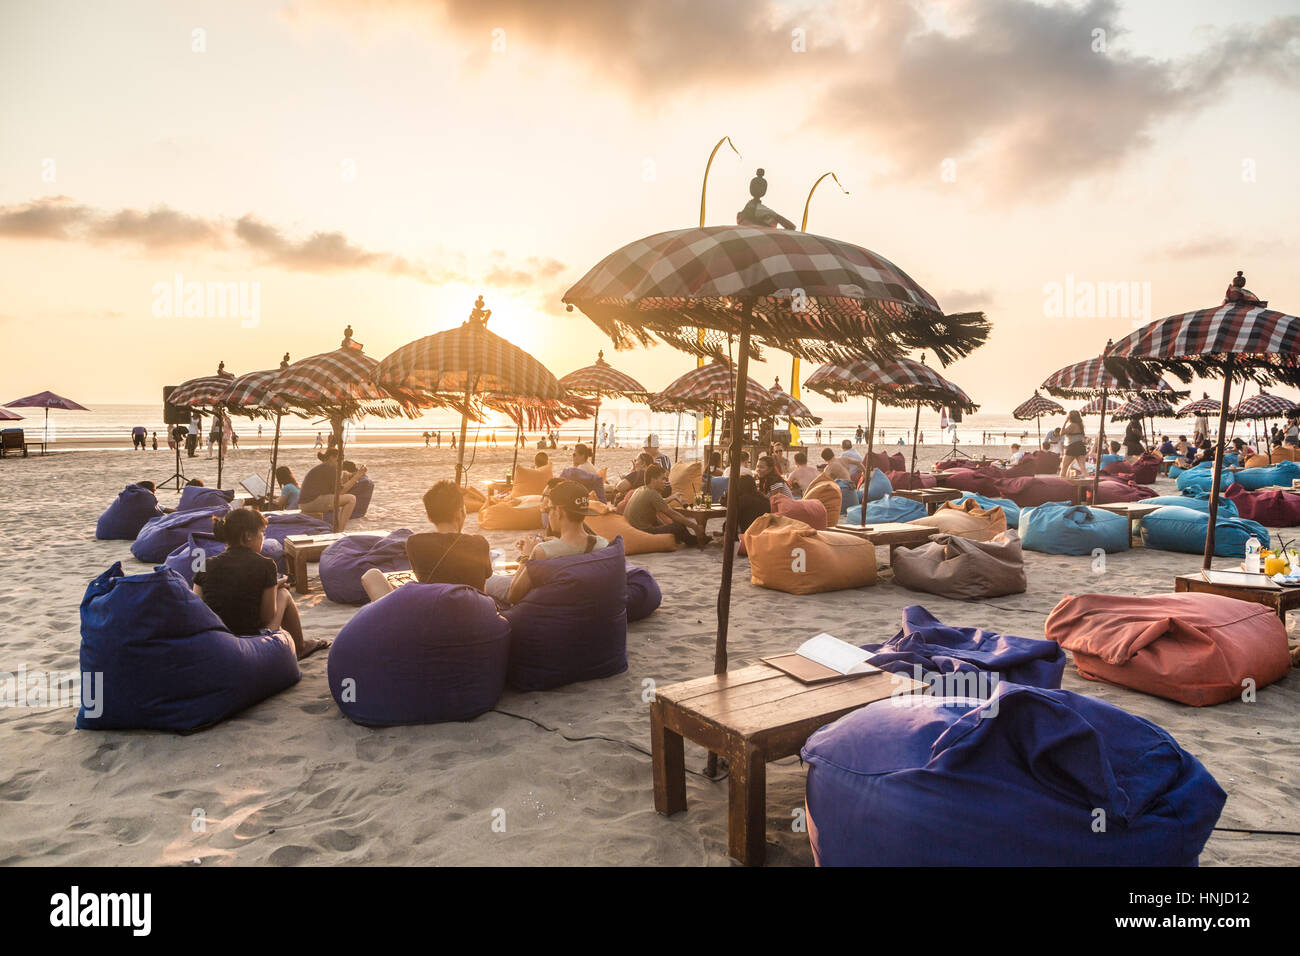 BALI, Indonesien - 31. Oktober 2015: Touristen genießen Sie einen Drink und beobachten den Sonnenuntergang in einer Strandbar Seminyak Strand entlang, nördlich von Kuta auf Bali. Stockfoto